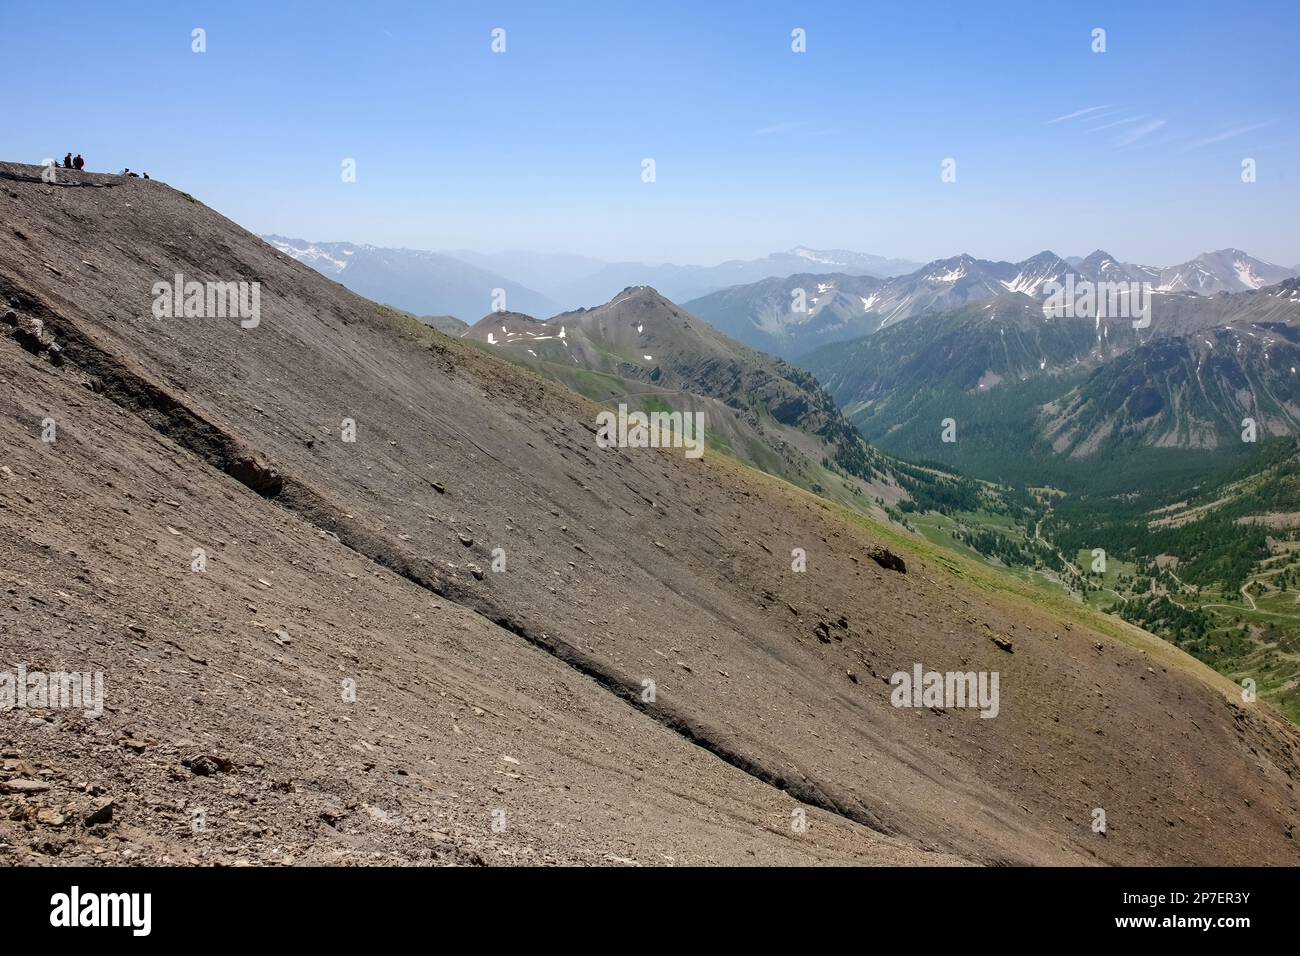 Erosion von Berg Berghang mit Geröll Schotter oberhalb von Baumgrenze, Route de la Bonette, Jausiers, Frankreich, Europa Foto Stock